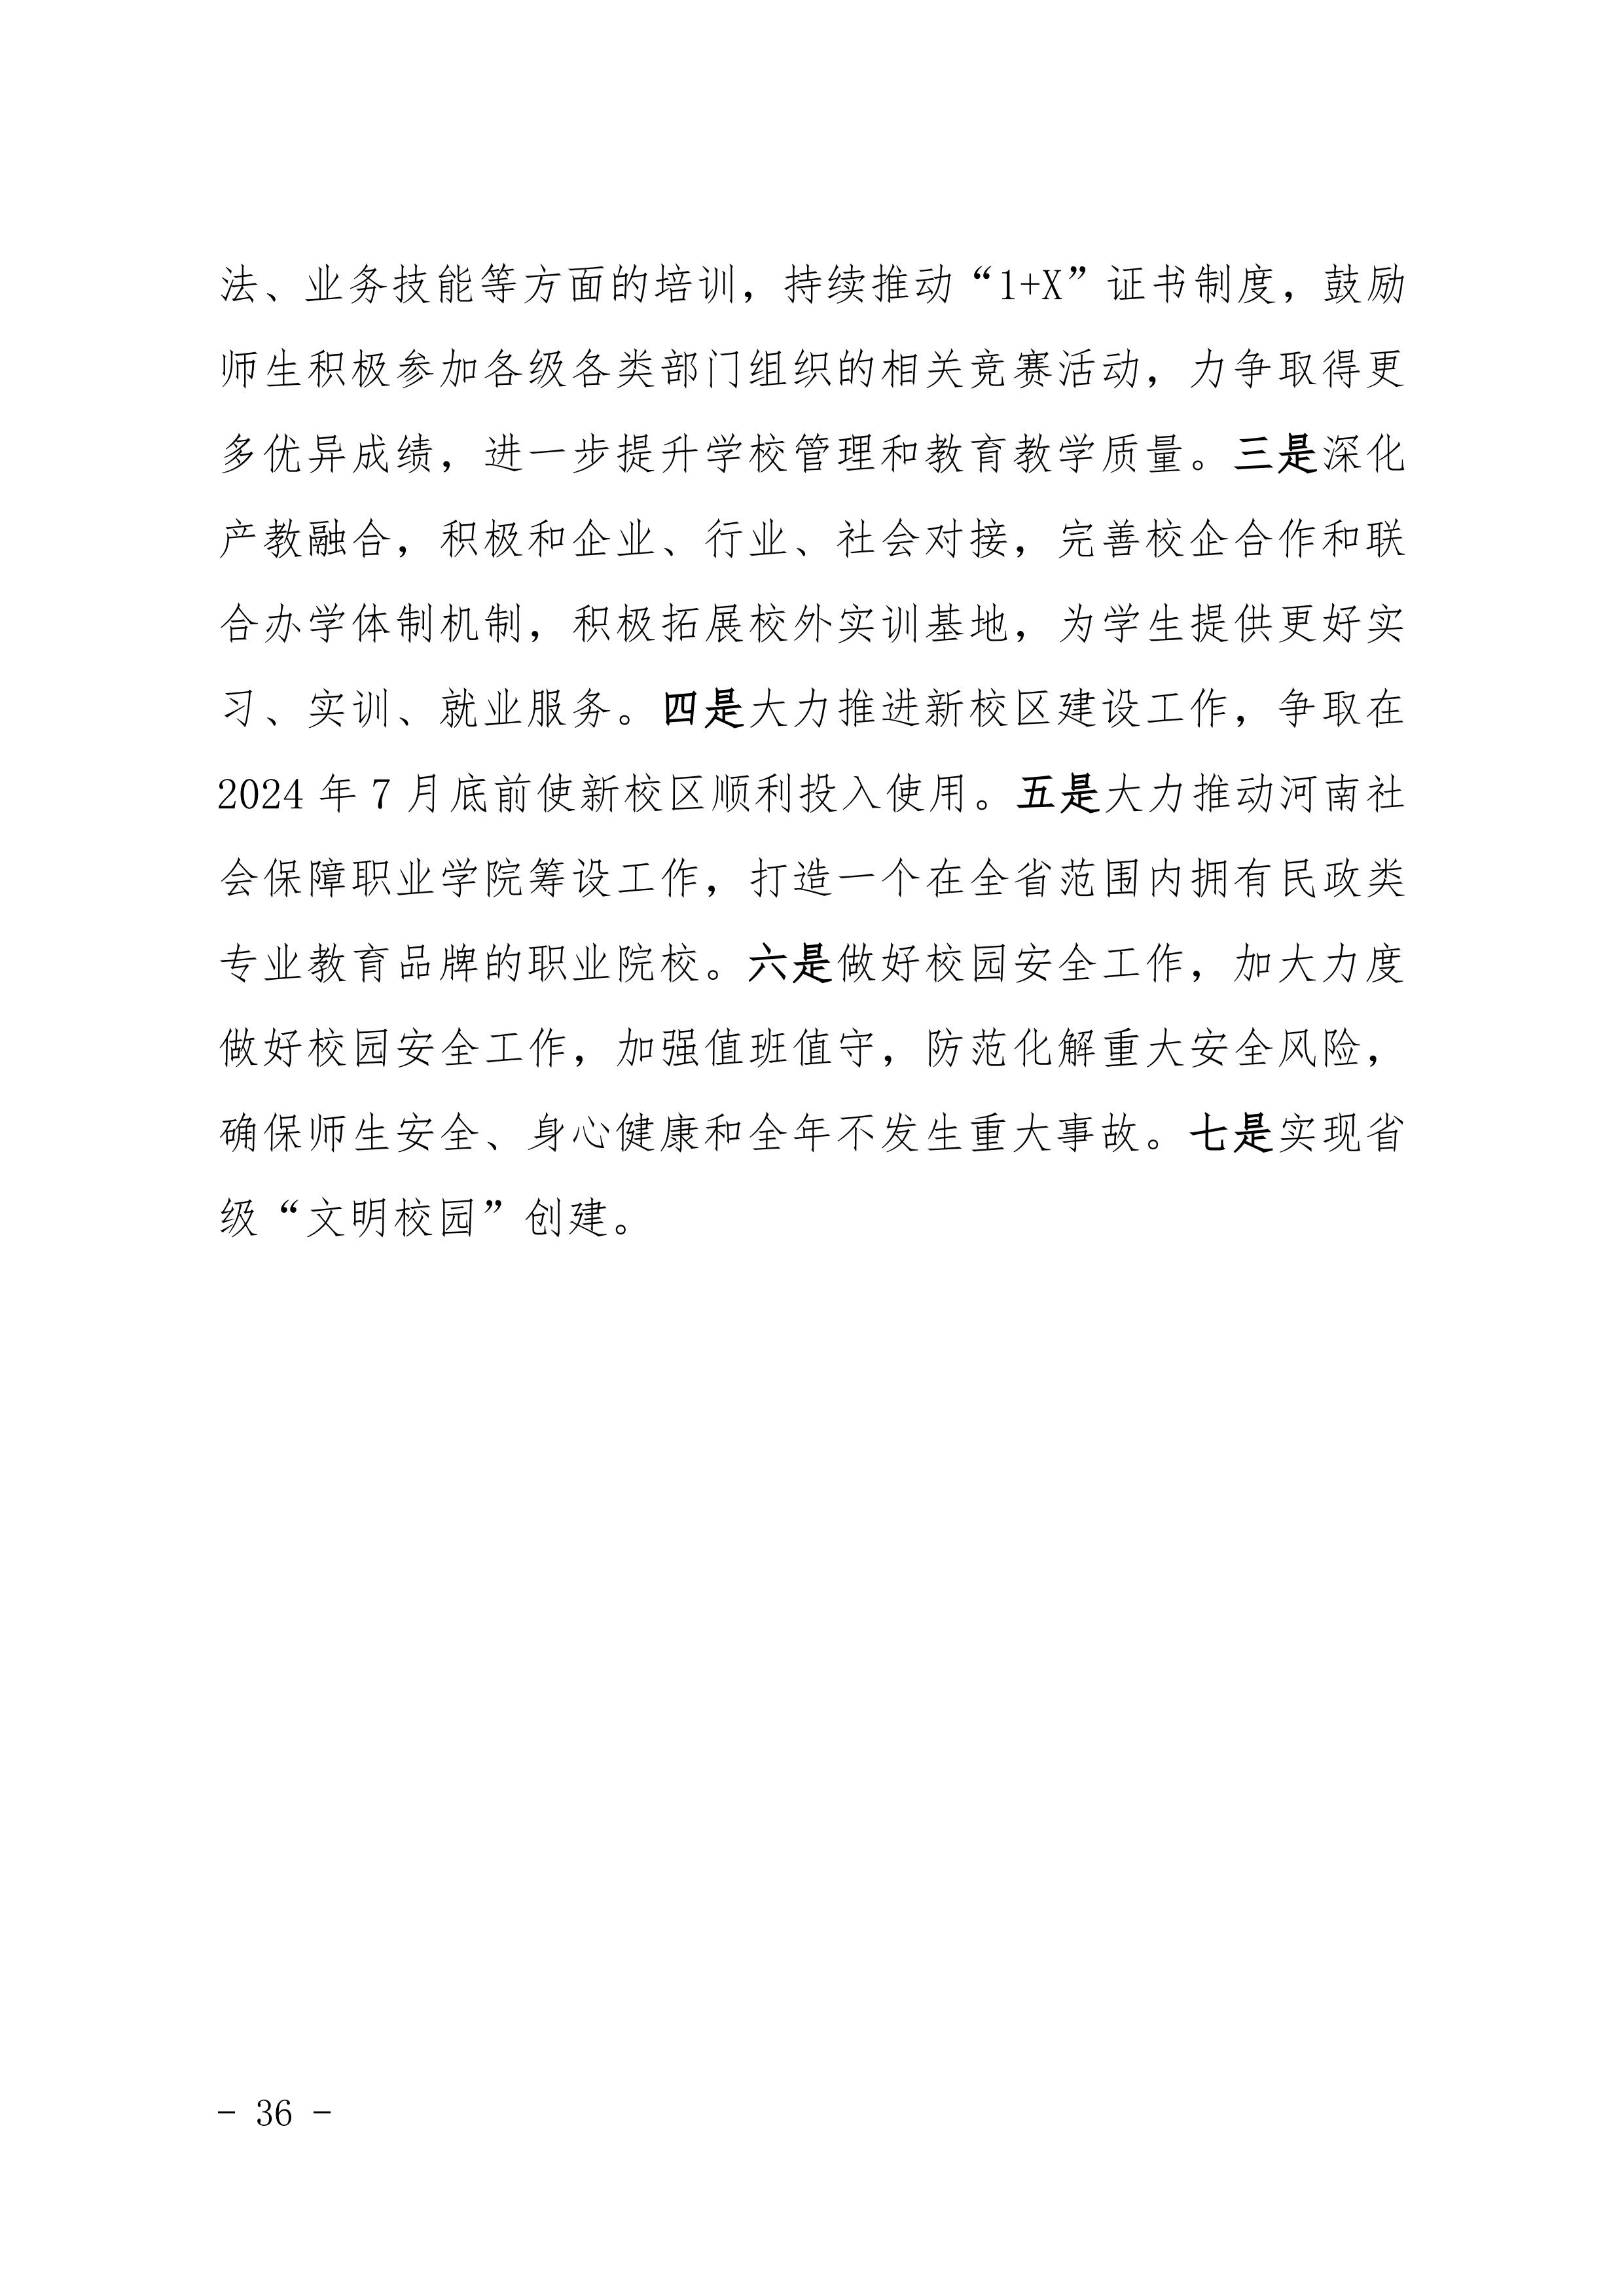 河南省民政学校职业教育质量报告（2023年度）发布版_39.jpg